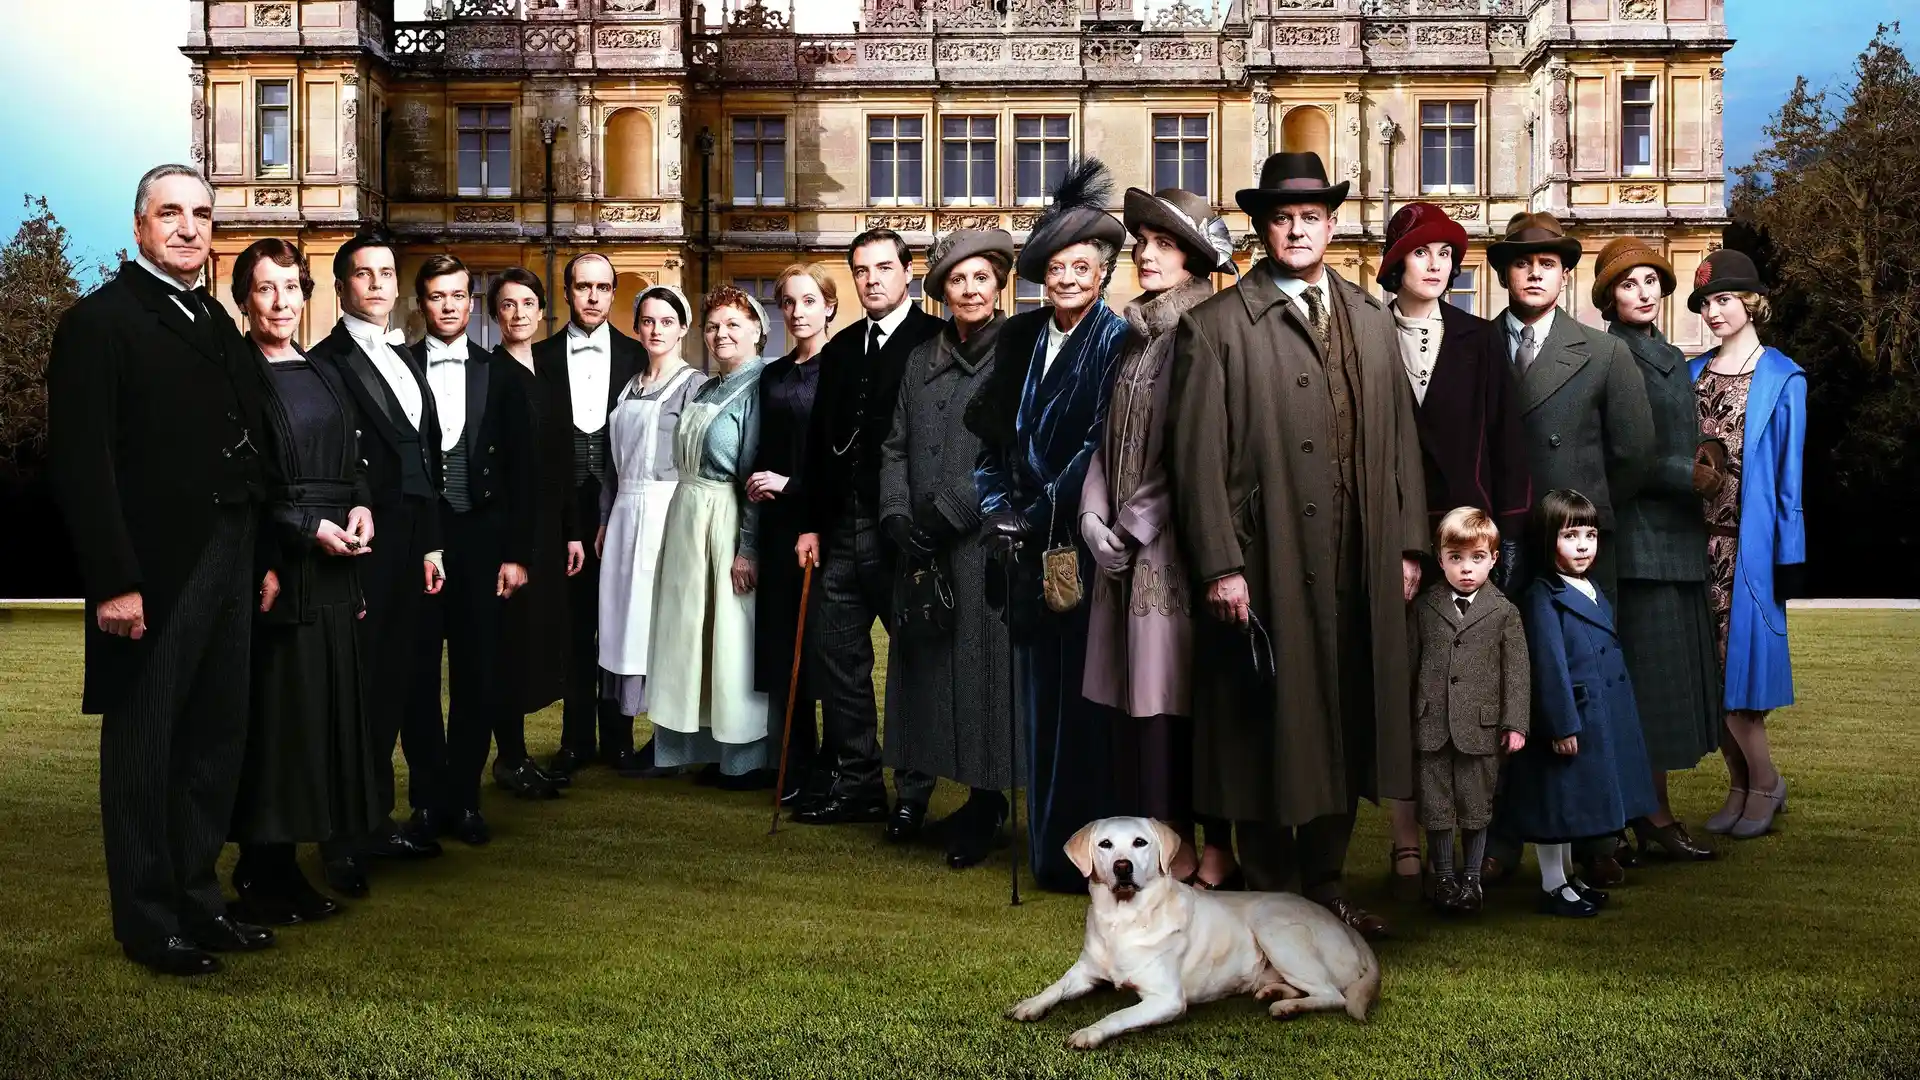 Personajes de la serie Downton Abbey colocados en fila frente a un castillo 